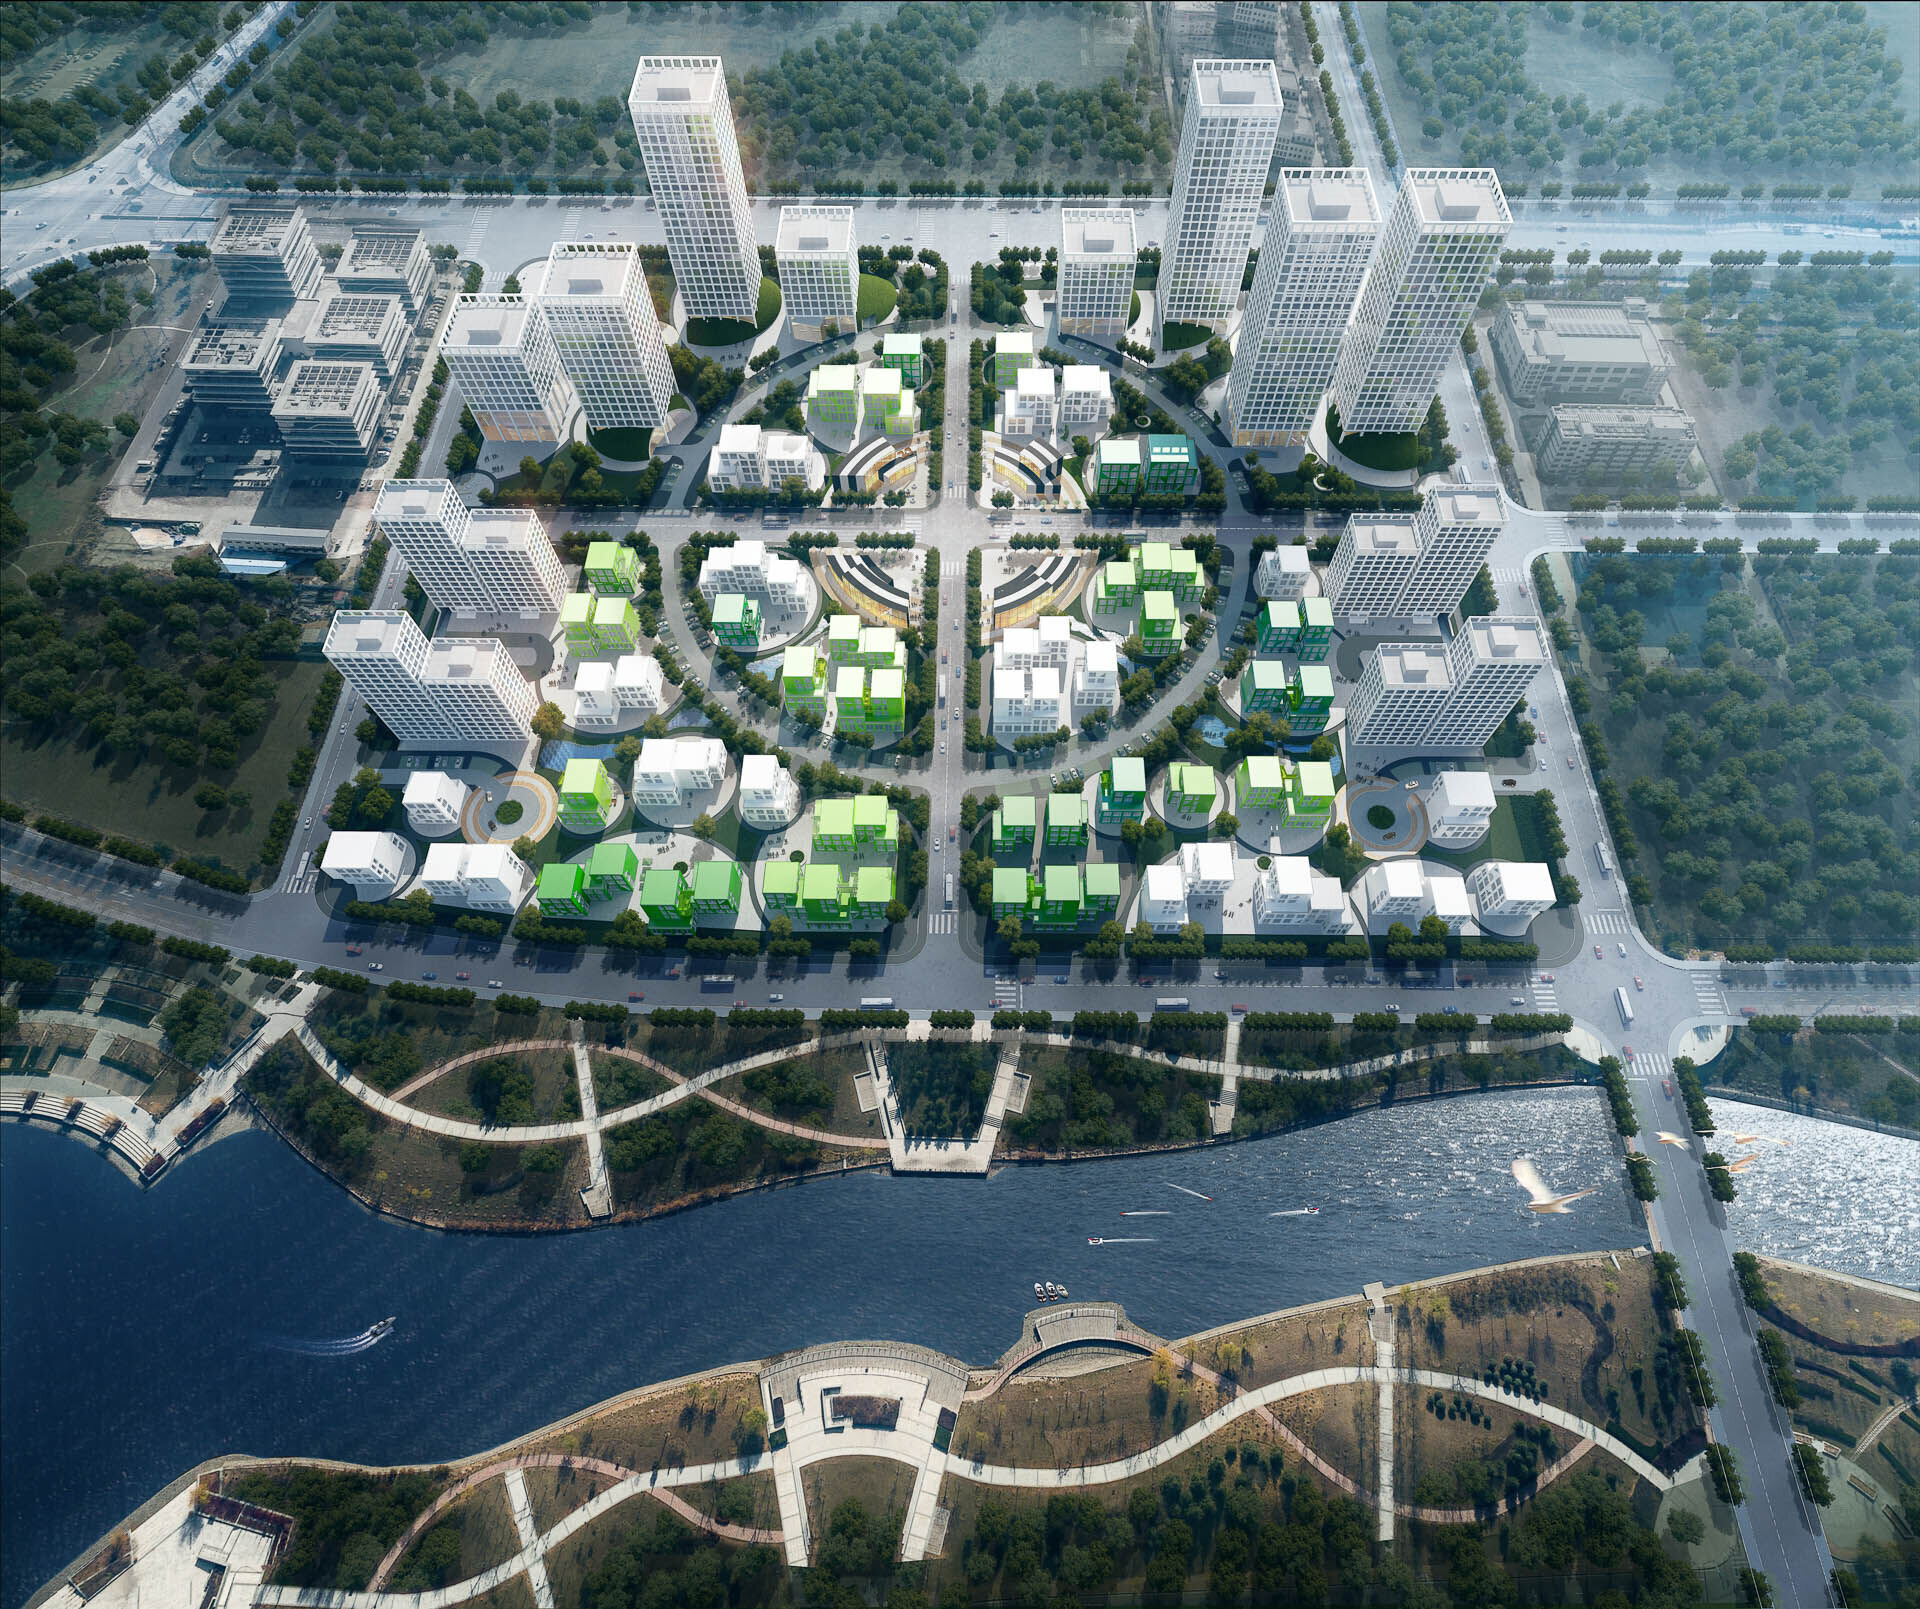 darron-eco-tech-park-qingdao-qing-dao-da-rong-sheng-tai-ke-ji-yuan-c-clou-architects-wwwclouarchitectscom-1920px-web-14.jpg